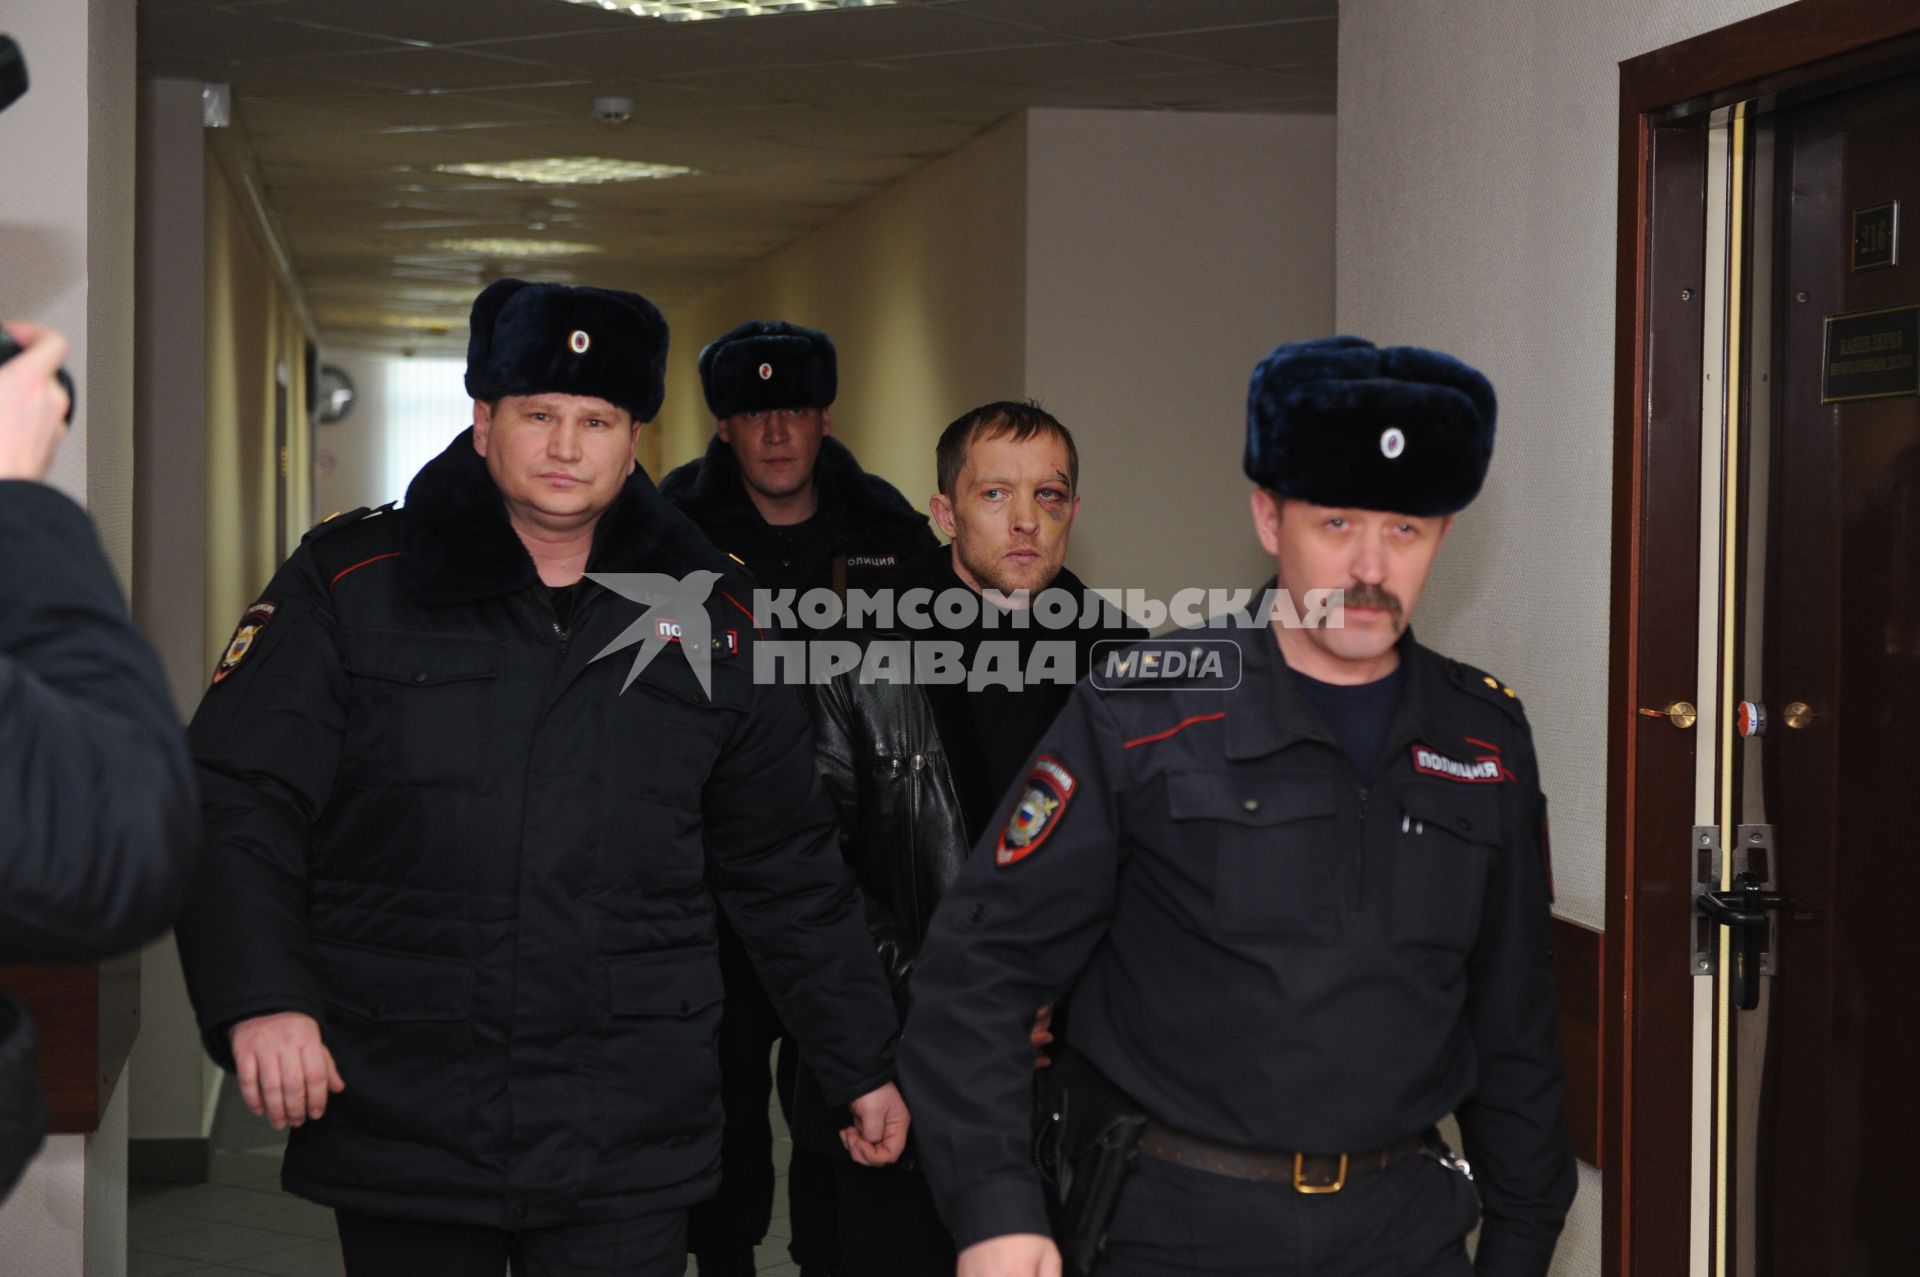 Рассмотрение ходатайства об аресте 44-летнего Дмитрия Паршина (второй справа), который обвиняется в нападении на уроженца Дагестана в московском метро в черемушкинском суде города Москвы.